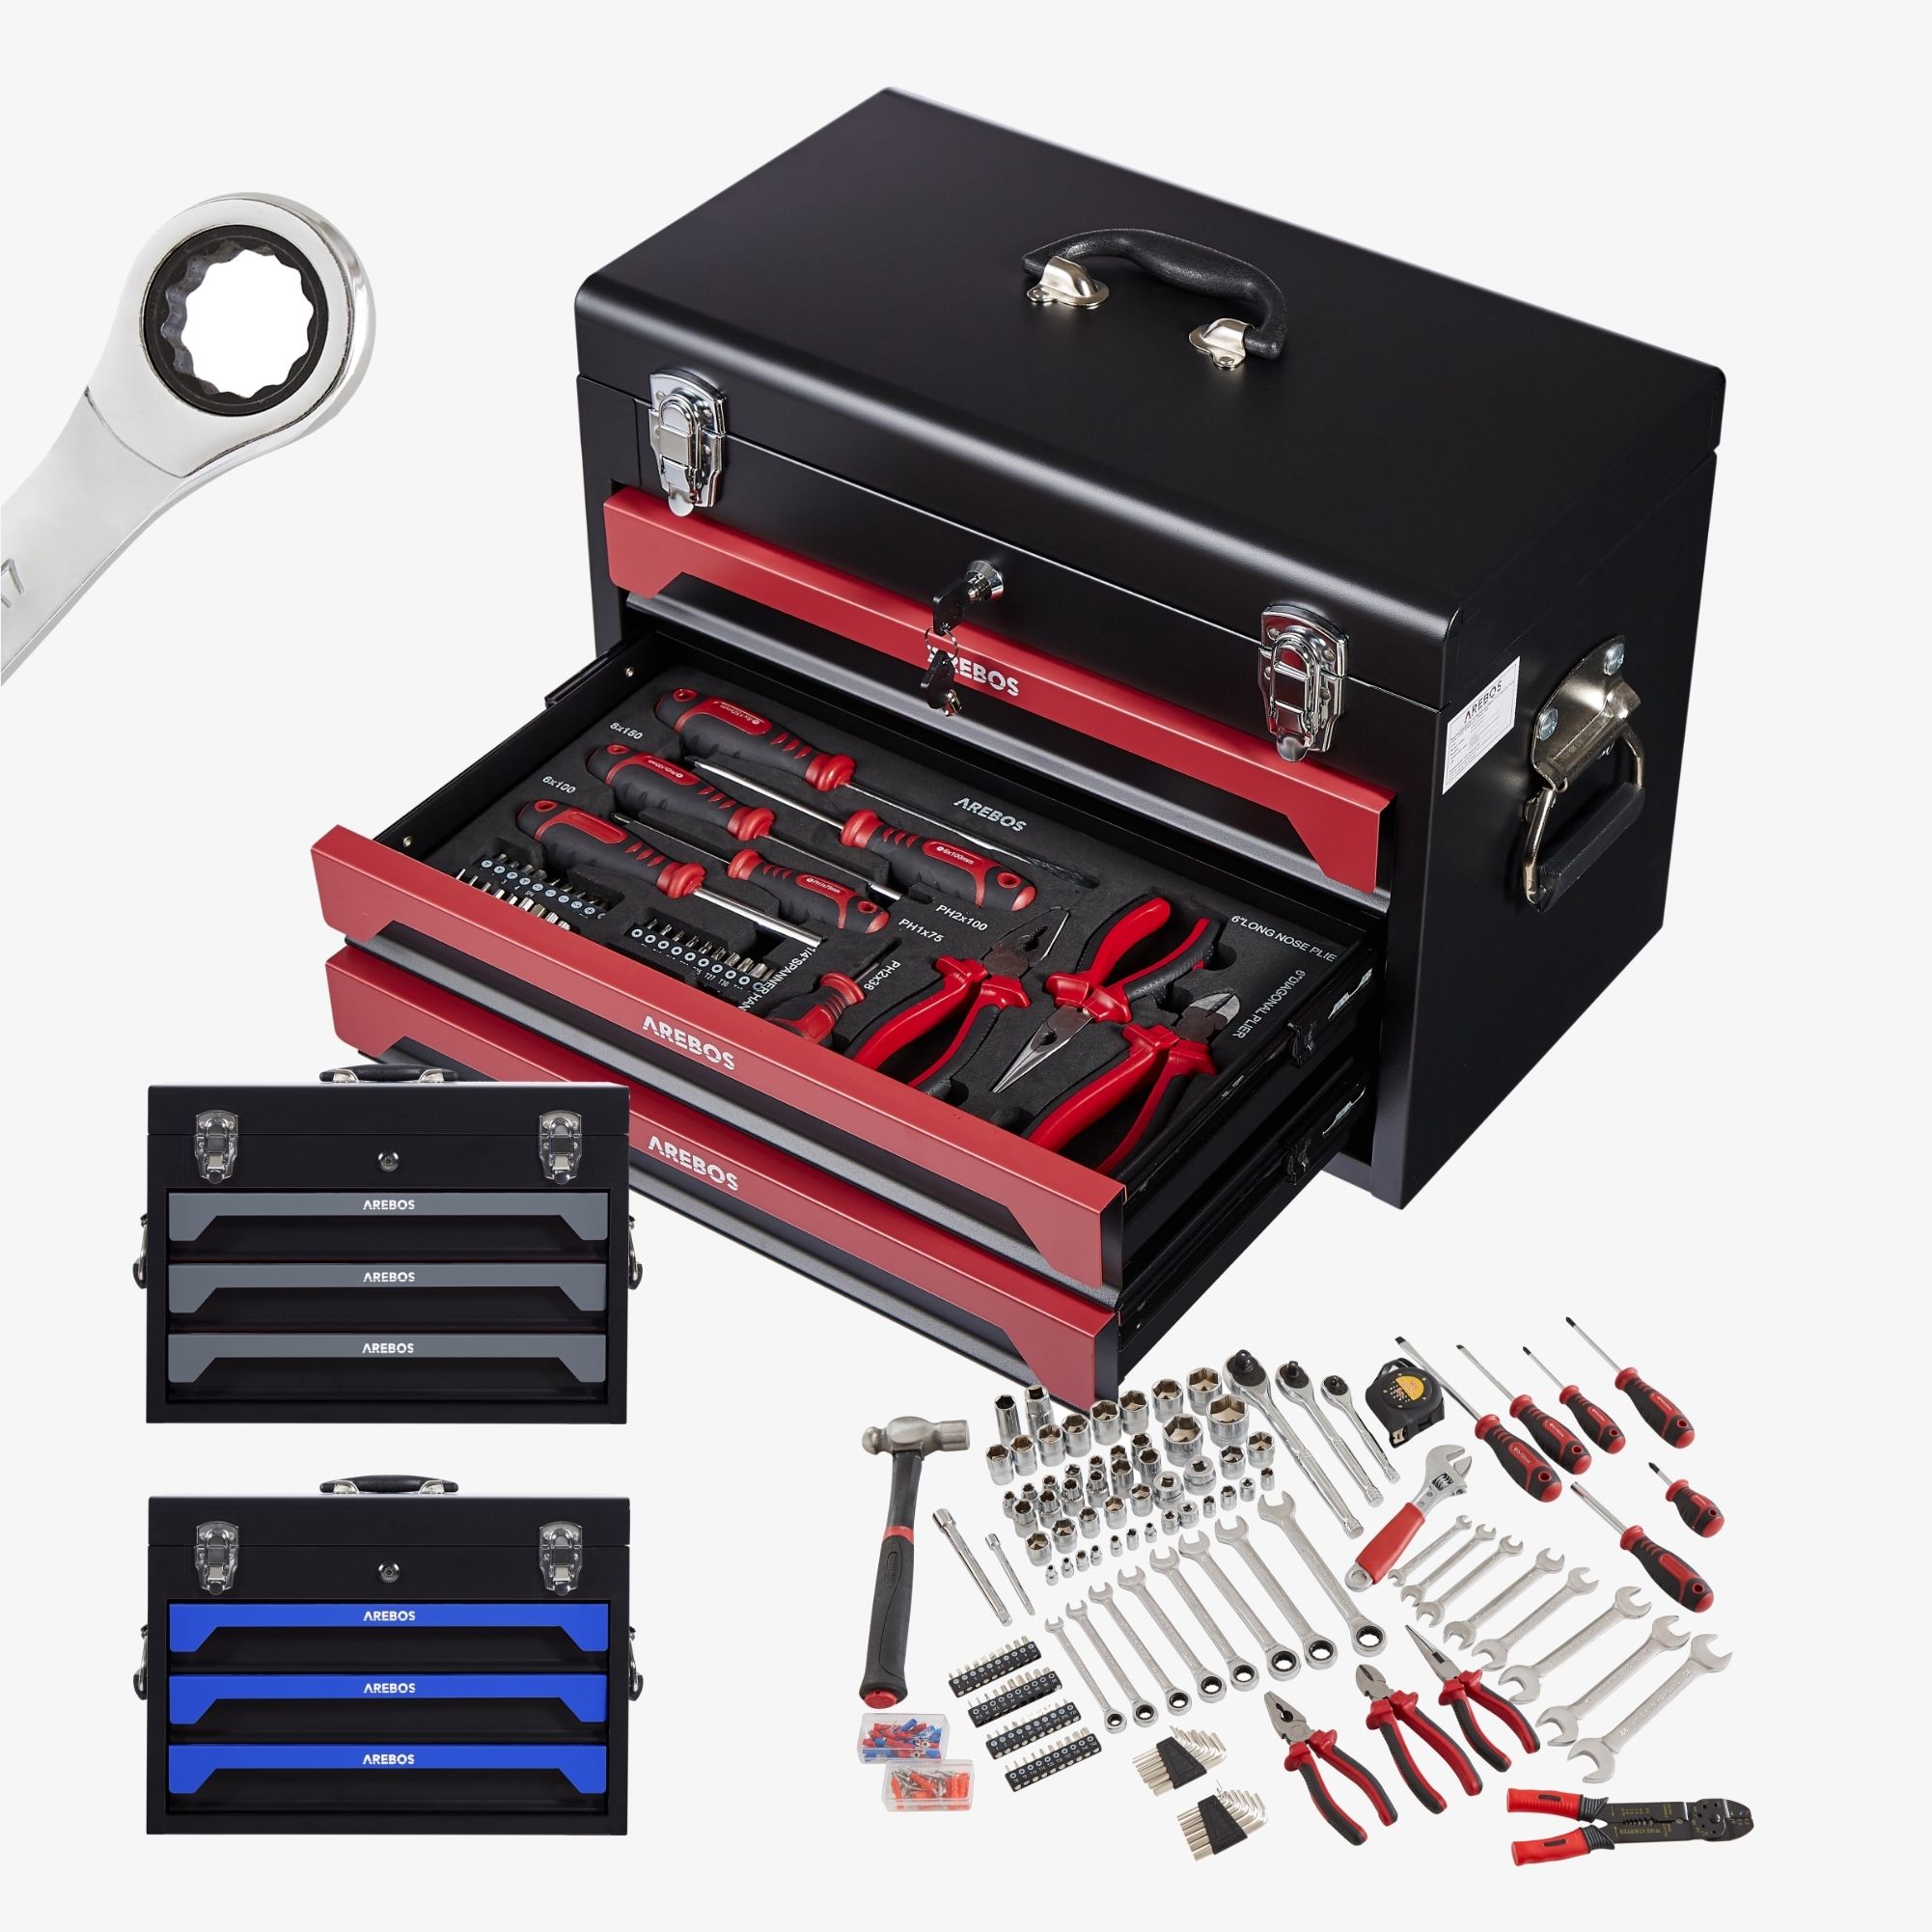 Arebos Boîte à outils avec 3 tiroirs et 2 compartiments de